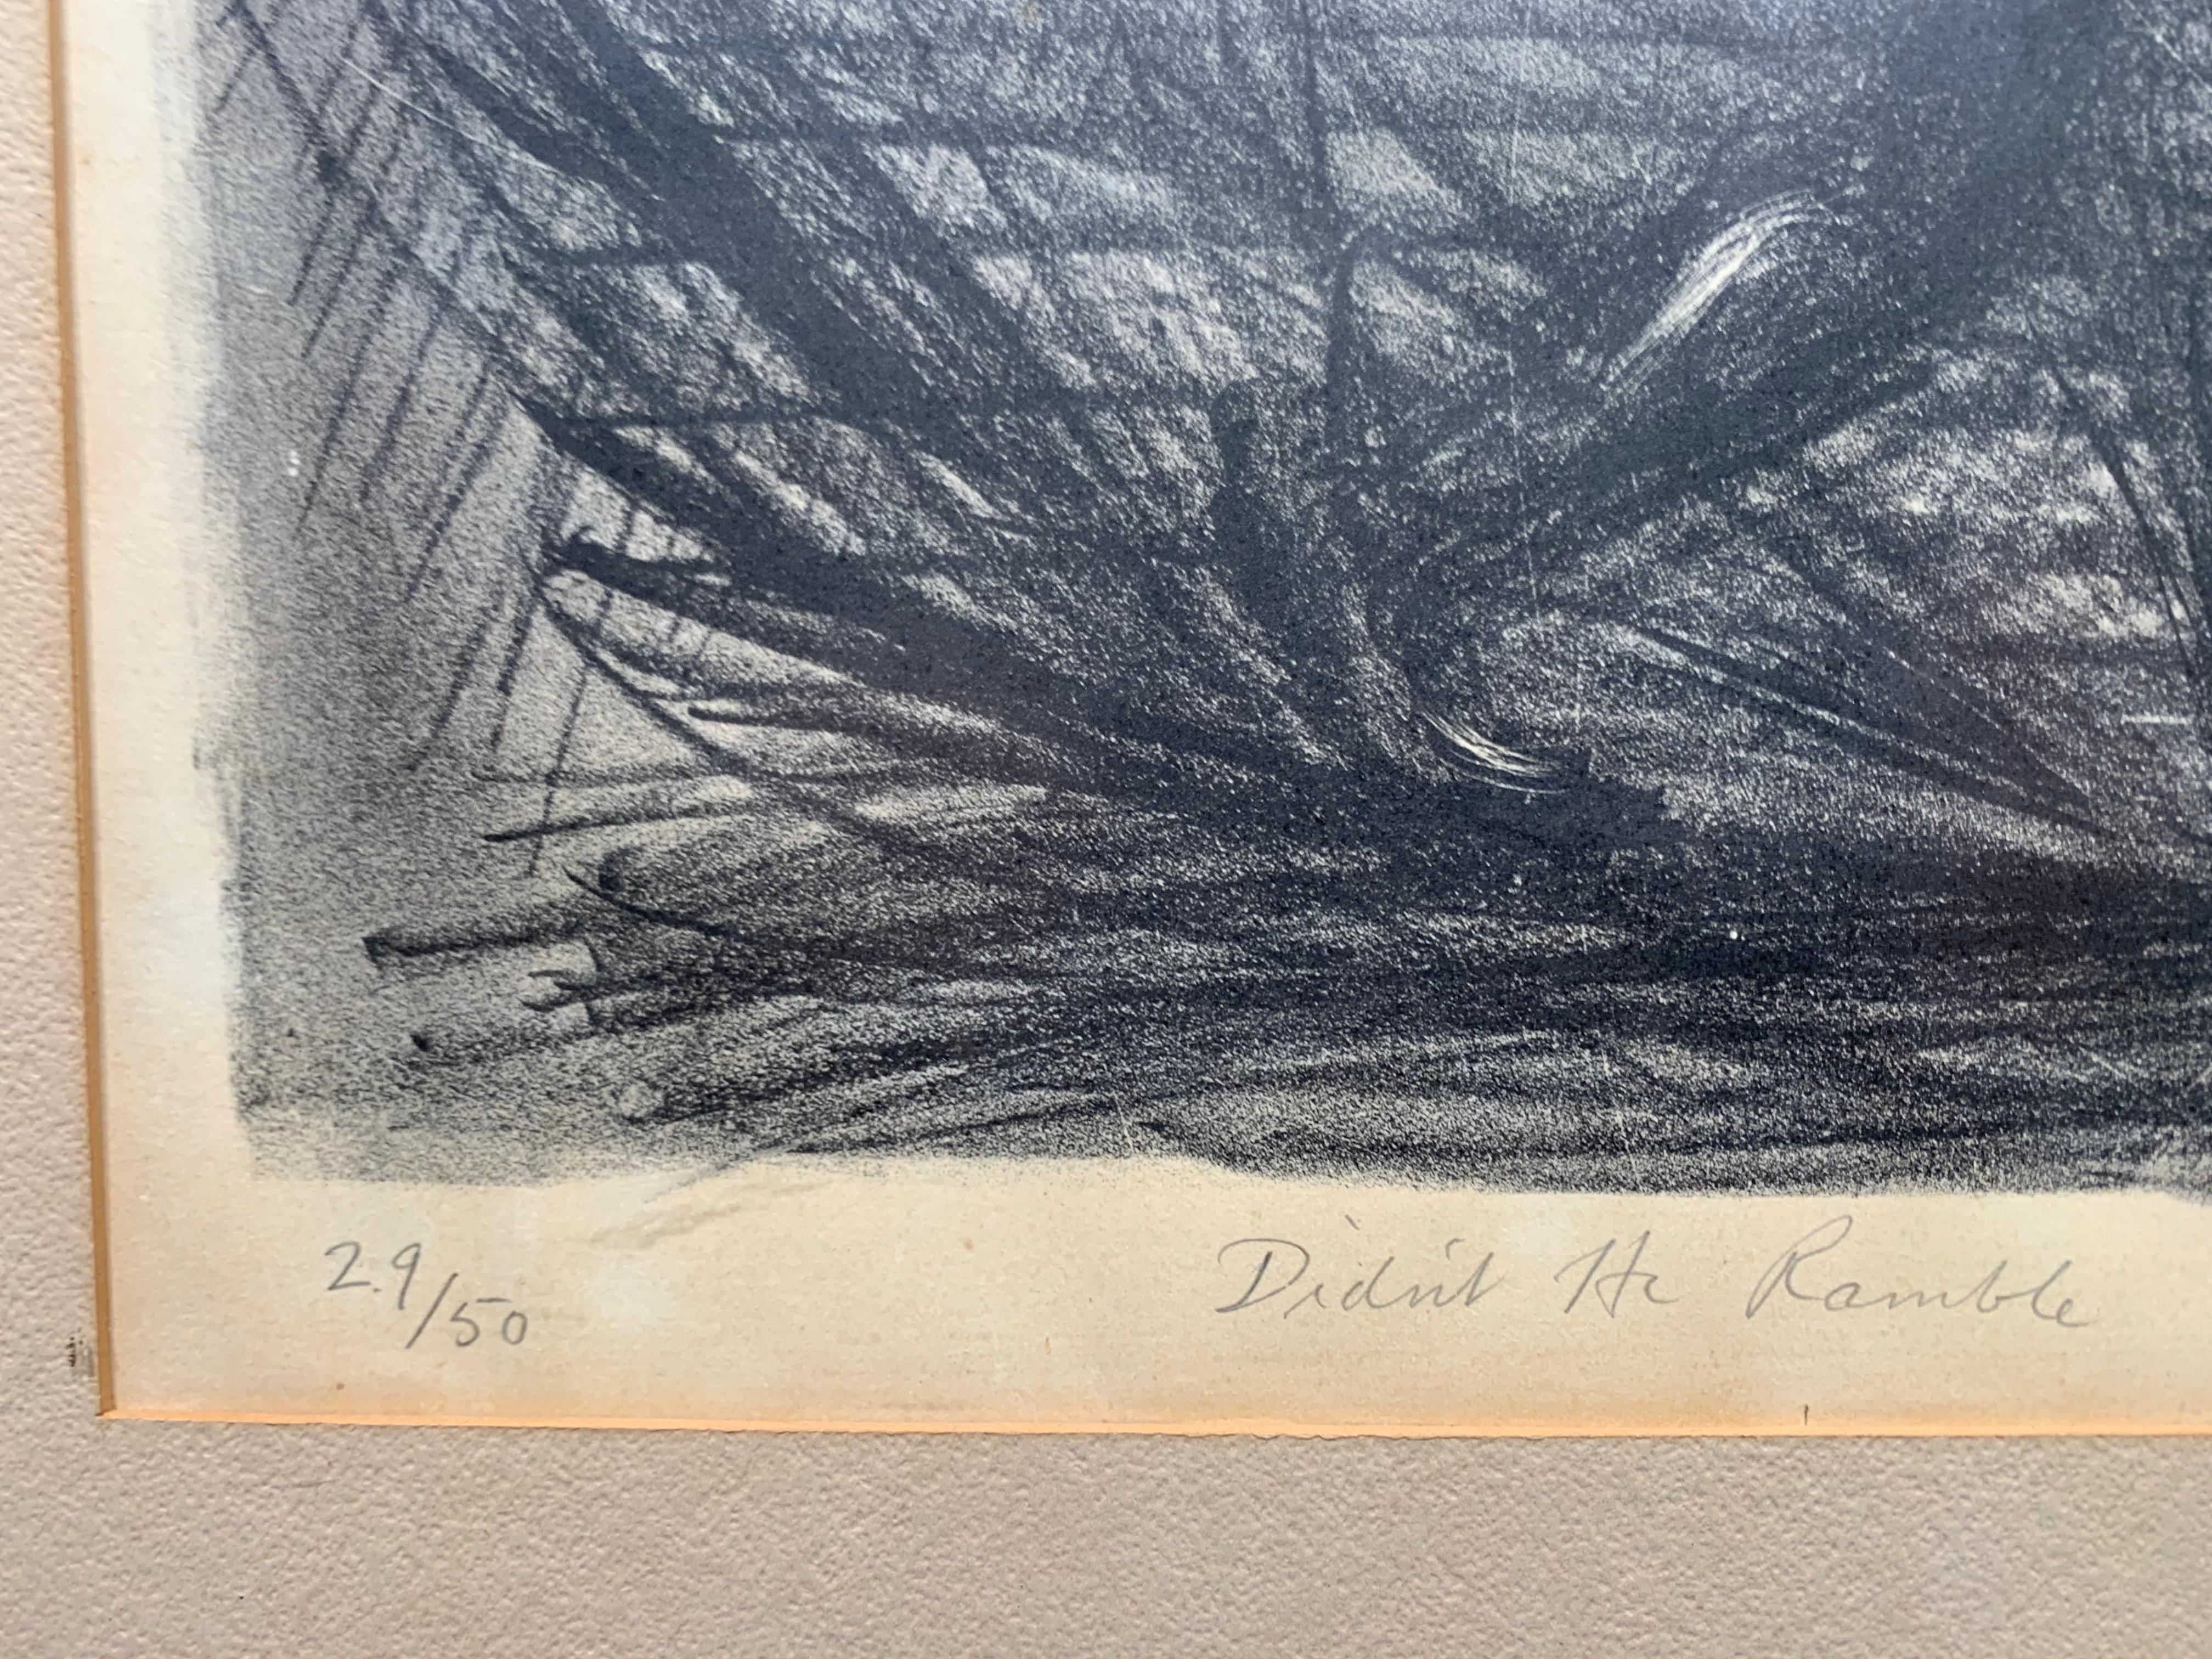 Whitford Carter (1915-1973). Didn't He Ramble ?, 1964. Lithographie sur papier, l'image mesure 13 x 17 pouces ; 19 x 22 pouces dans le cadre original. Signé, daté, numéroté et titré par l'artiste au crayon, dans la marge inférieure. 